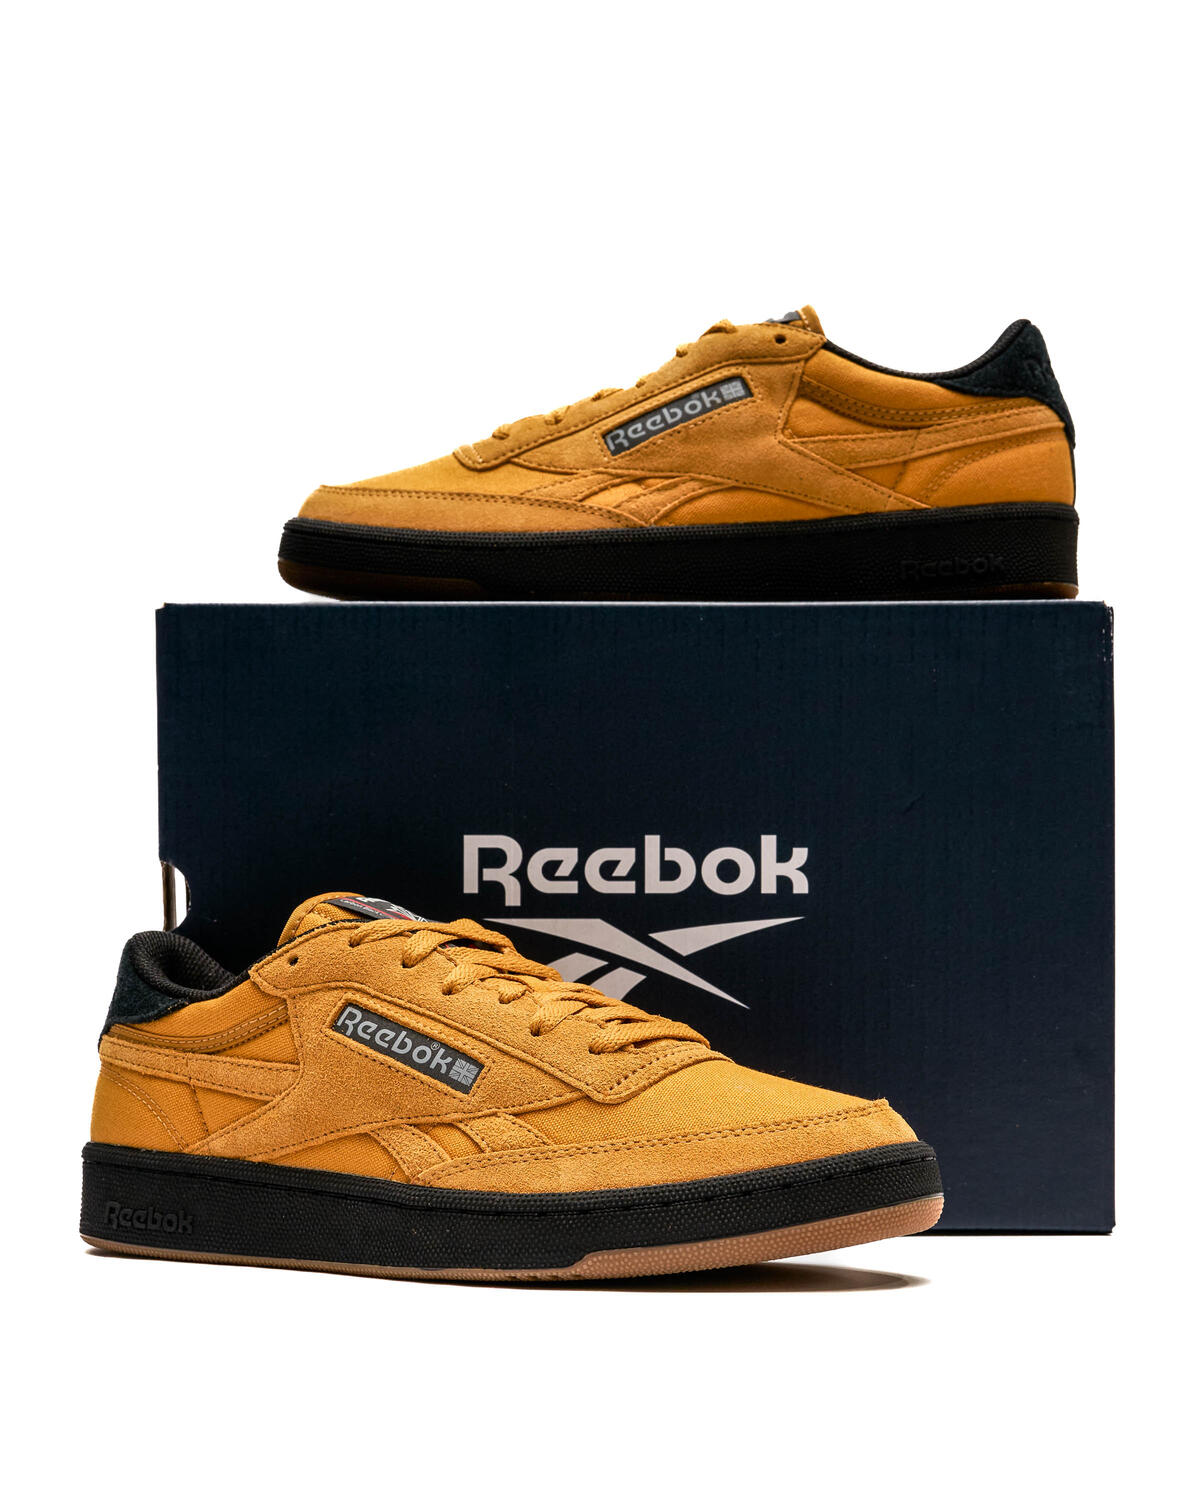 Reebok x 3M Club C Revenge Retro Gold Shoes